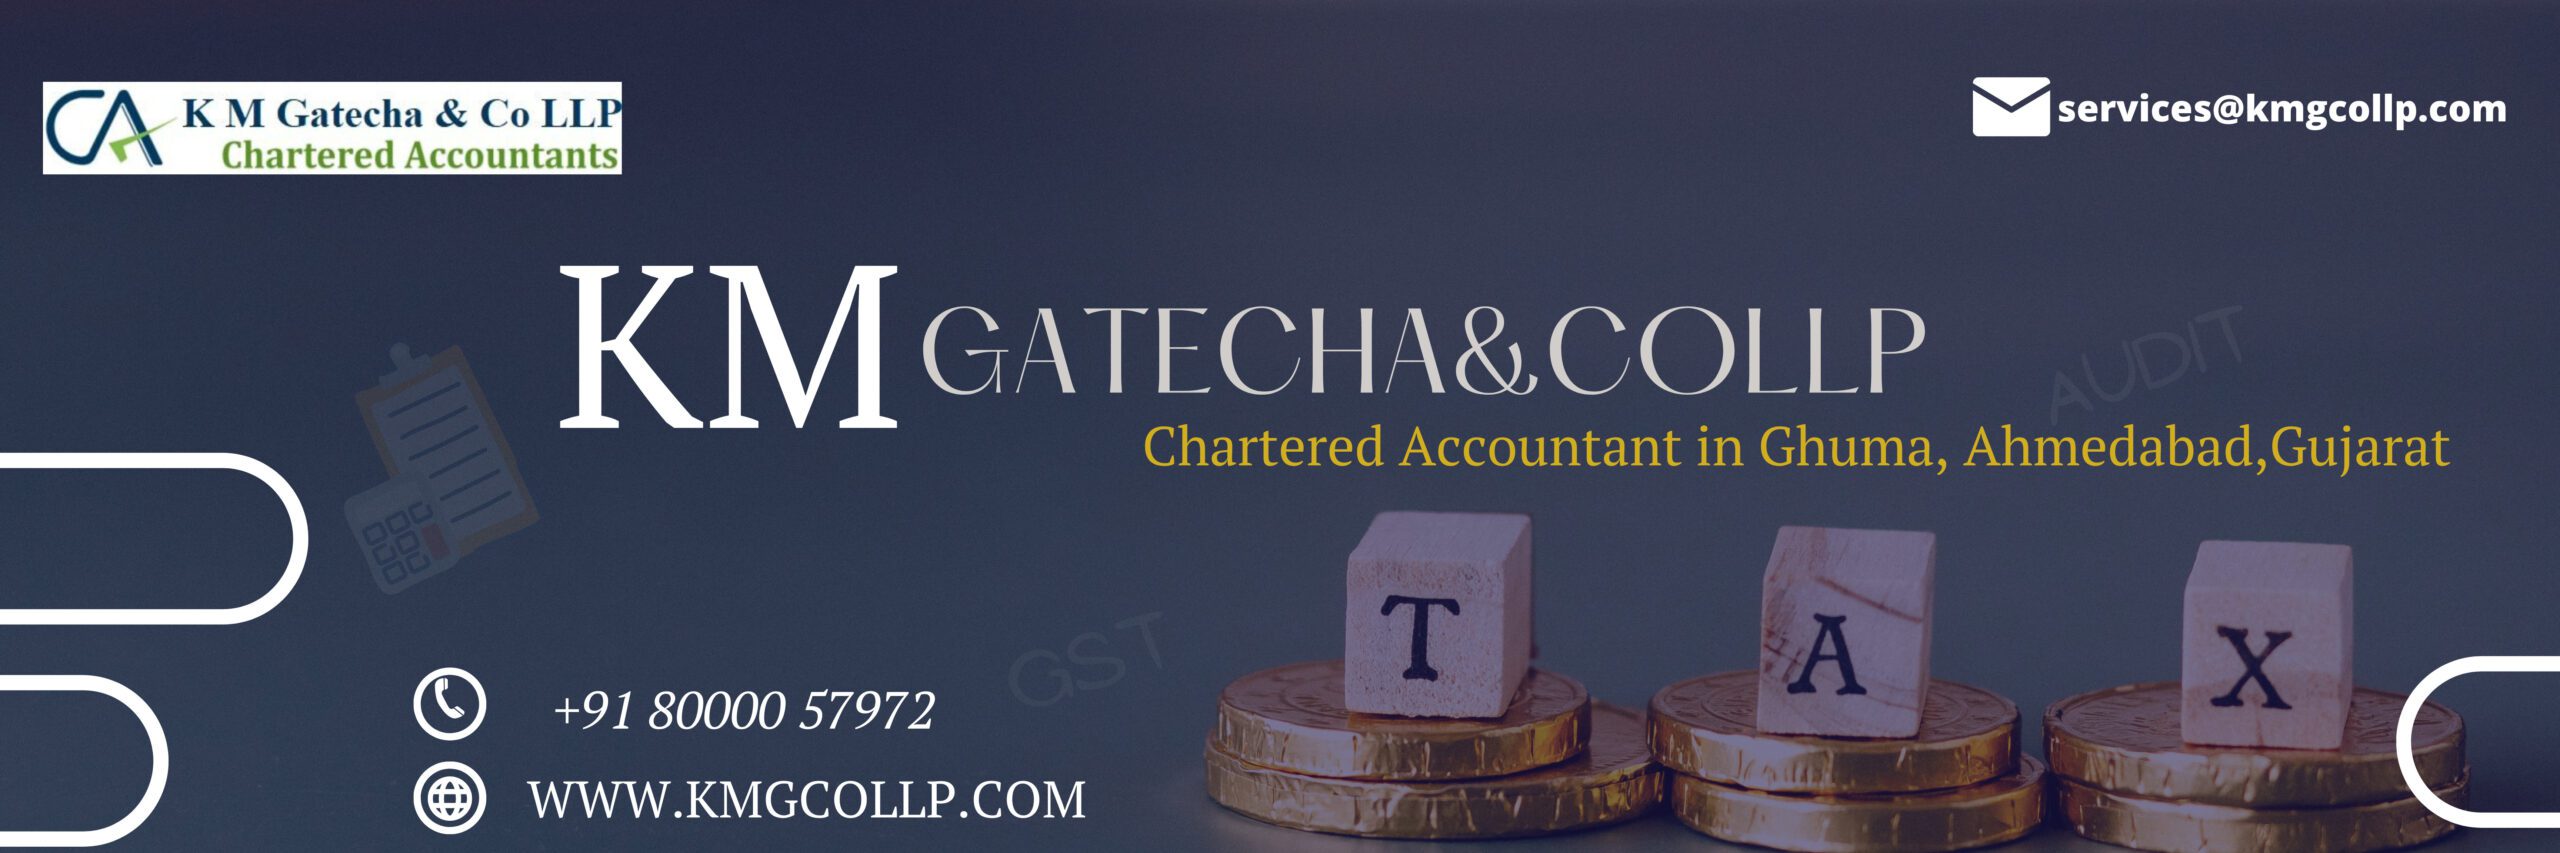 ca chartered accountant in ghuma